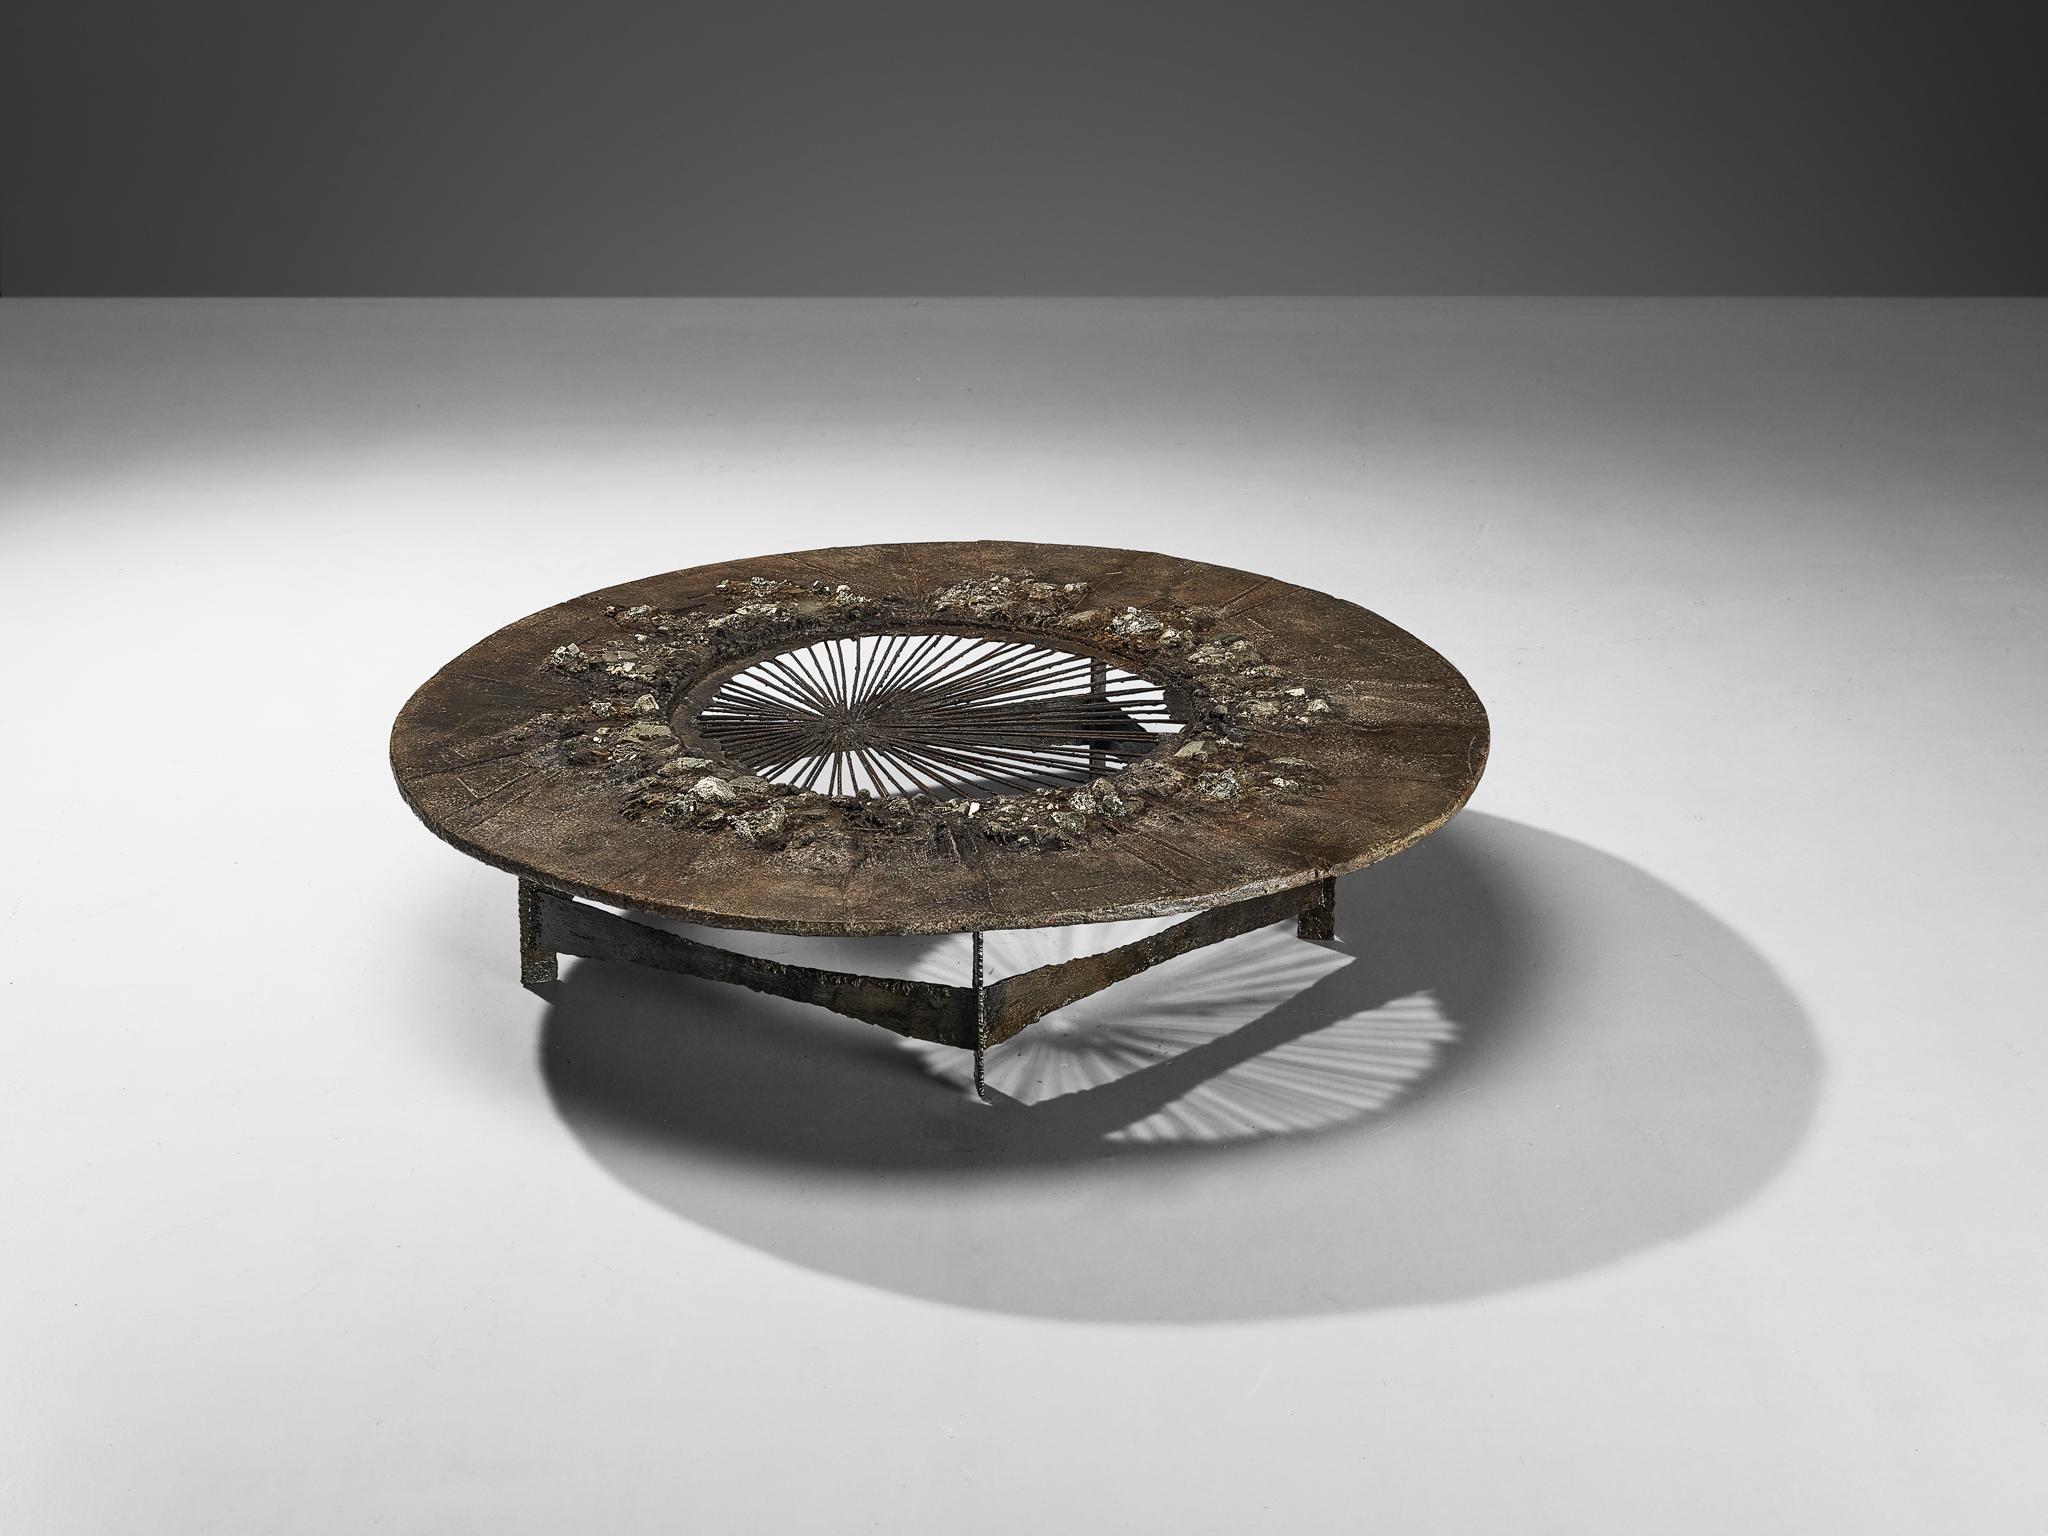 Pia Manu, table basse, minéral pyrite, ammonite, fer, béton bruni, Belgique, années 1960

Cette table basse rare, fabriquée à la main à partir d'une juxtaposition plutôt surprenante de matériaux naturels, est conçue dans l'atelier de Pia Manu. Ce